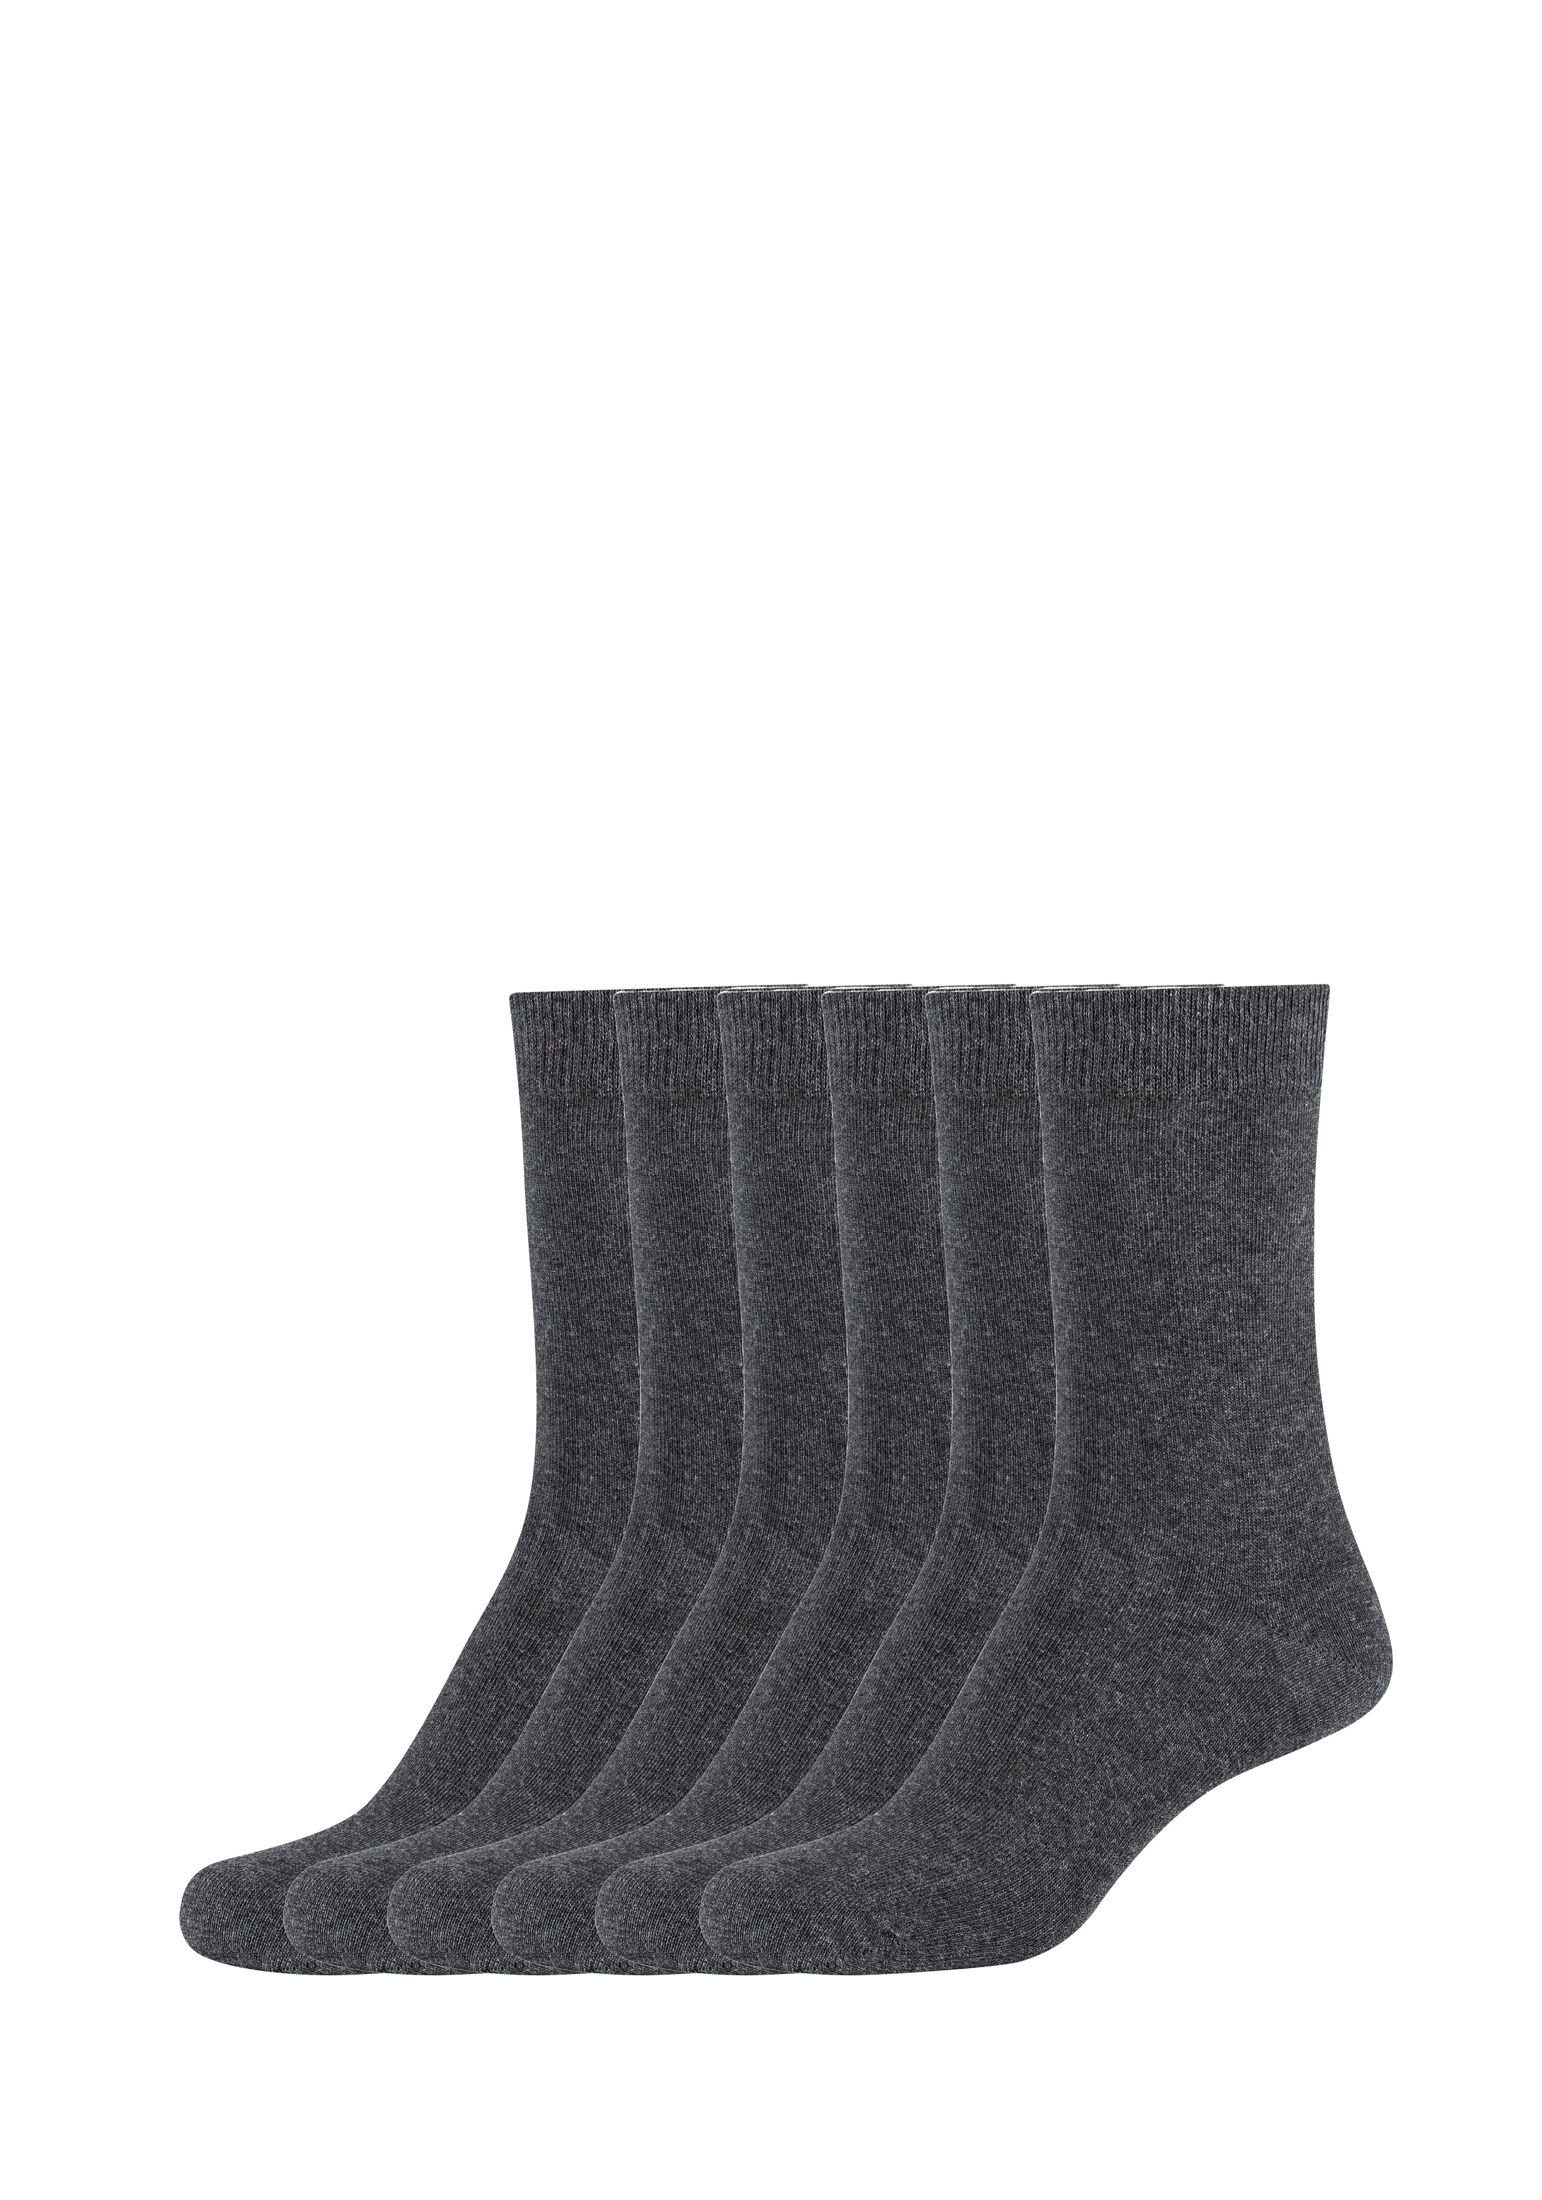 Neue Produkte diese Woche s.Oliver Socken Socken 6er anthracite melange Pack